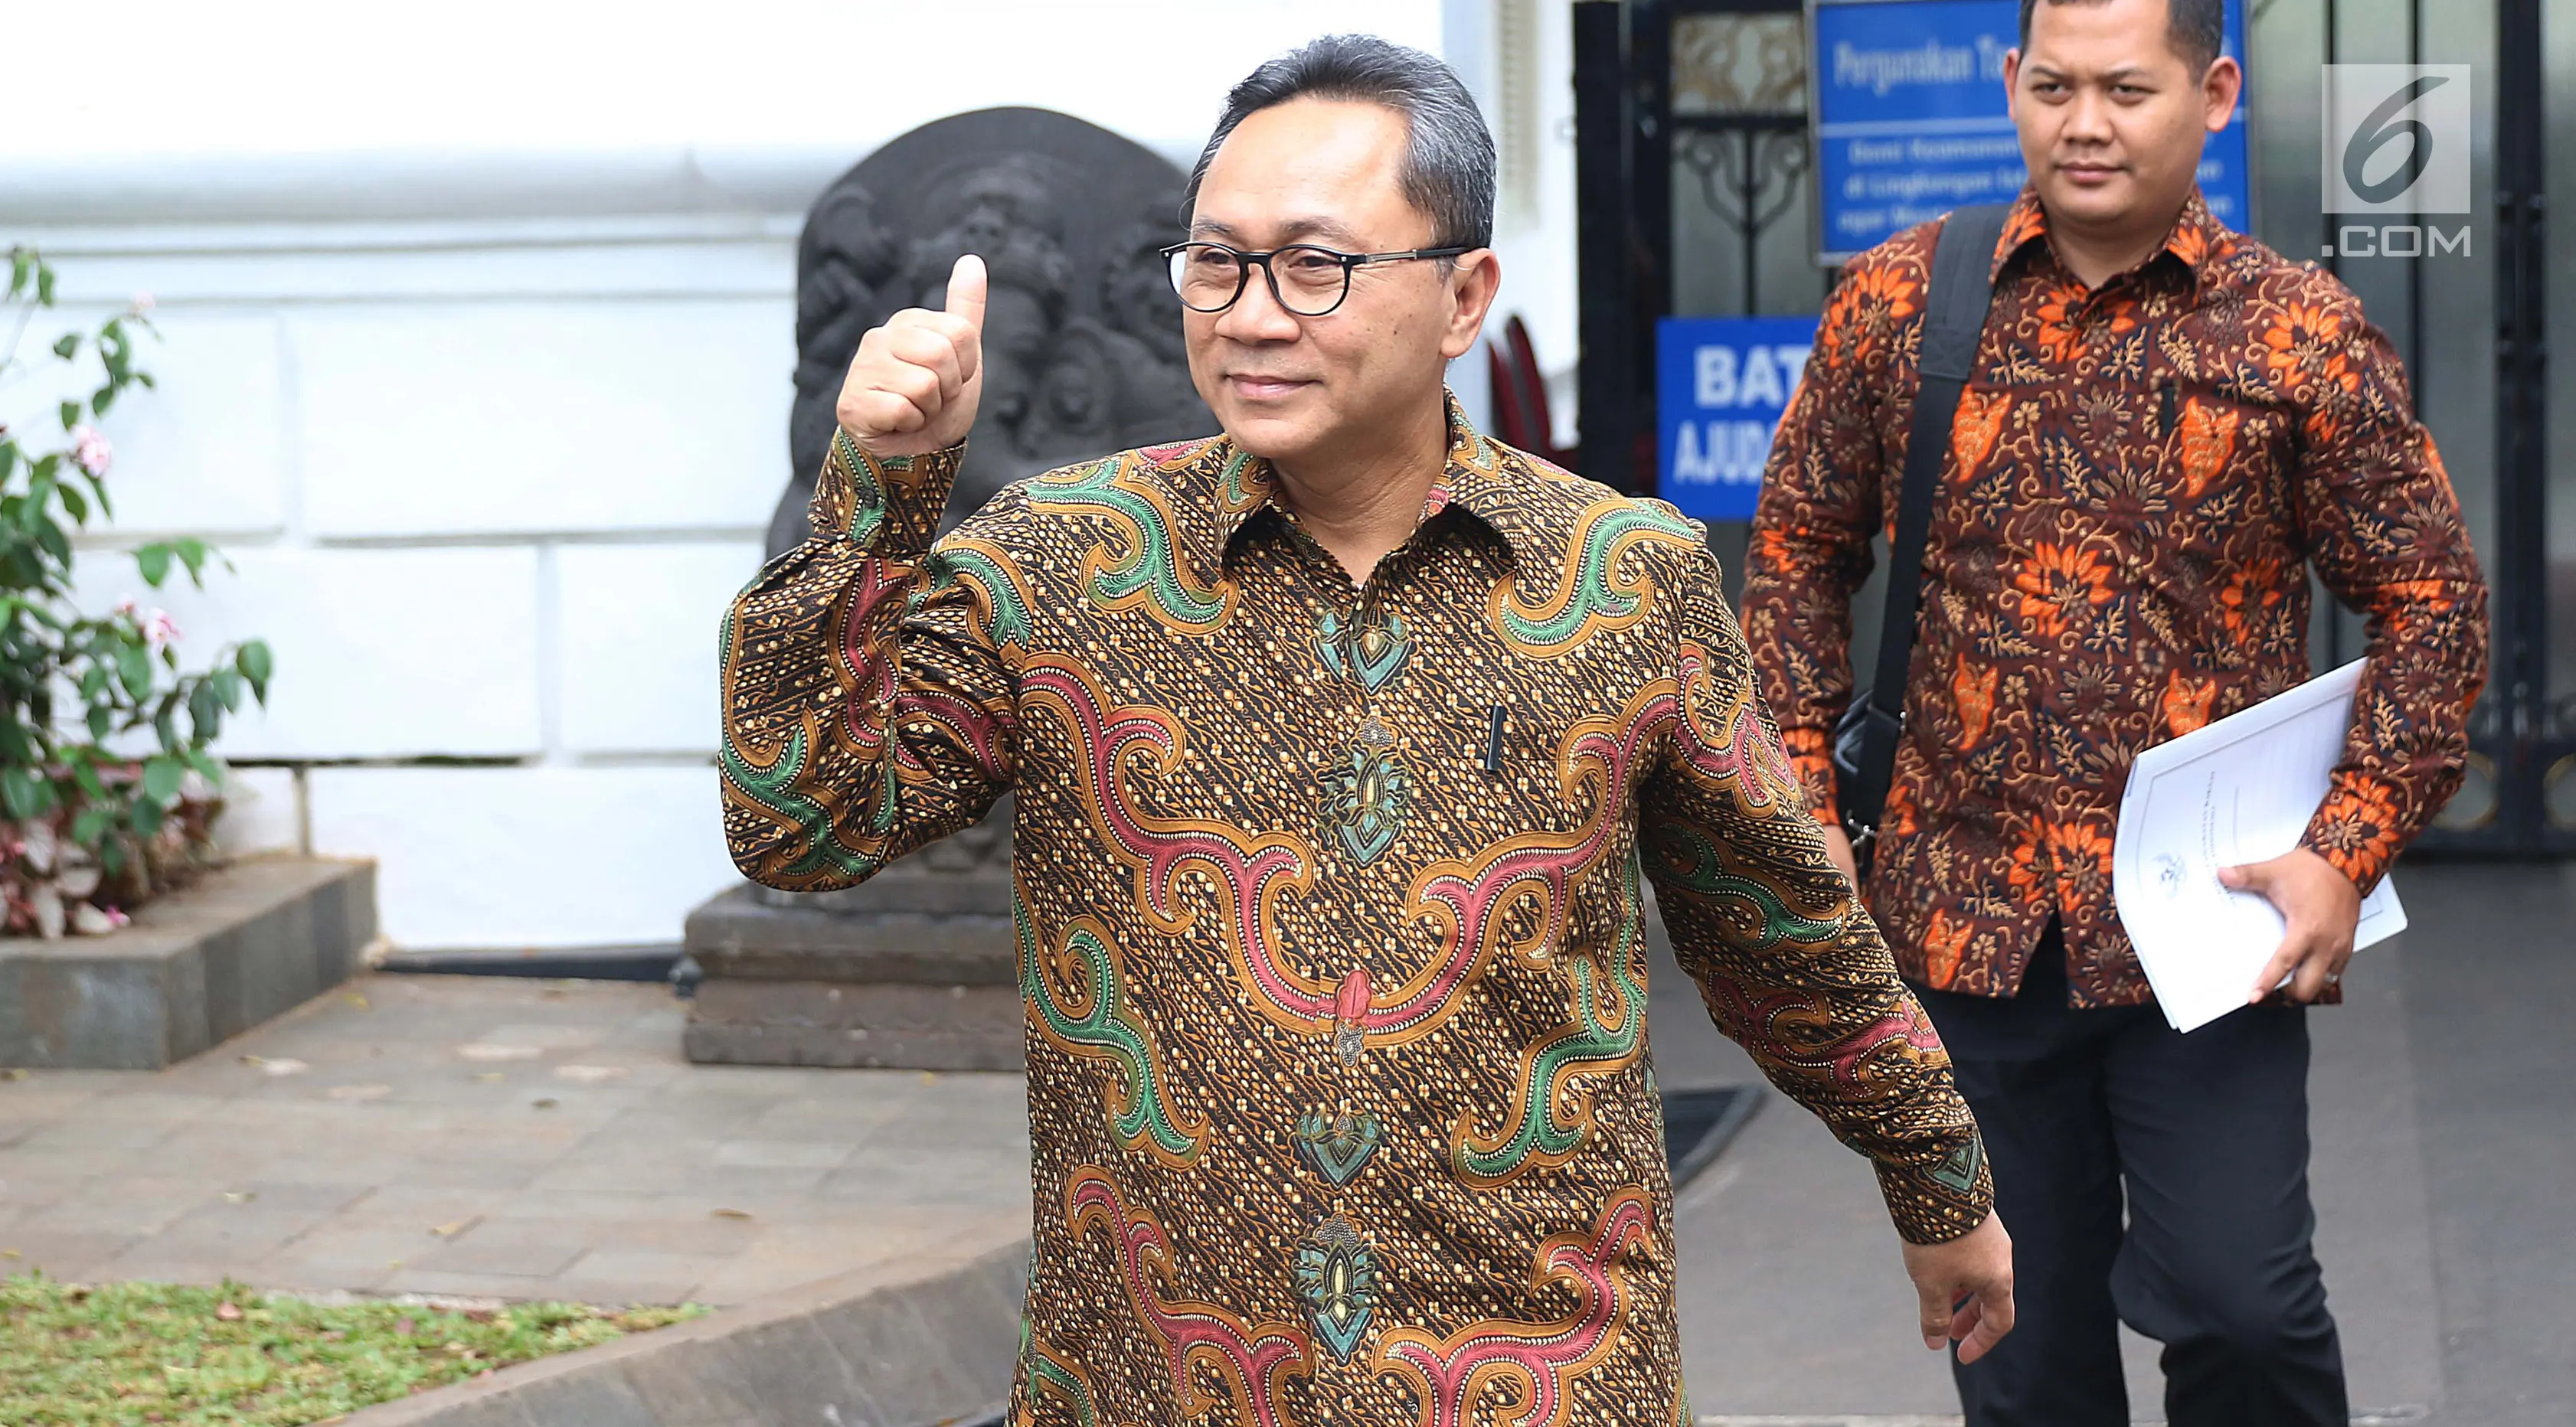 Ketua MPR yang juga Ketum PAN Zulkifli Hasan melambaikan tangan seusai menemui Presiden Joko Widodo (Jokowi) di Istana Merdeka, Jakarta, Selasa (18/7). Jokowi dan Zulkifli melakukan pertemuan tertutup membicarakan berbagai isu. (Liputan6.com/Angga Yuniar)